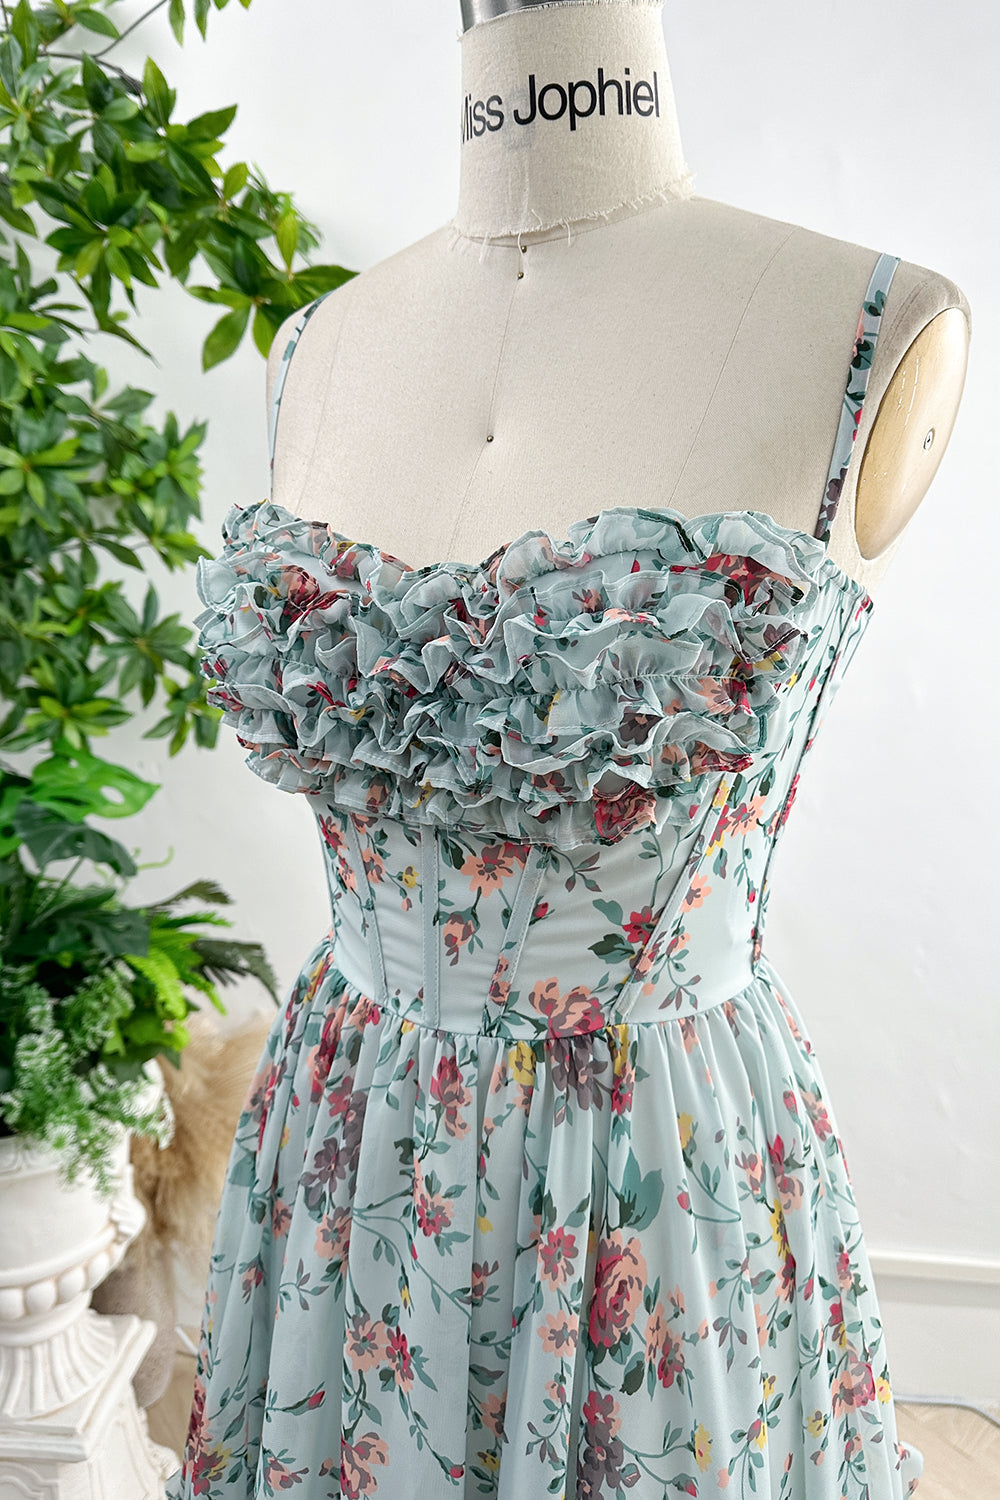 Spaghetti Straps Corset Floral Print Chiffon Dress